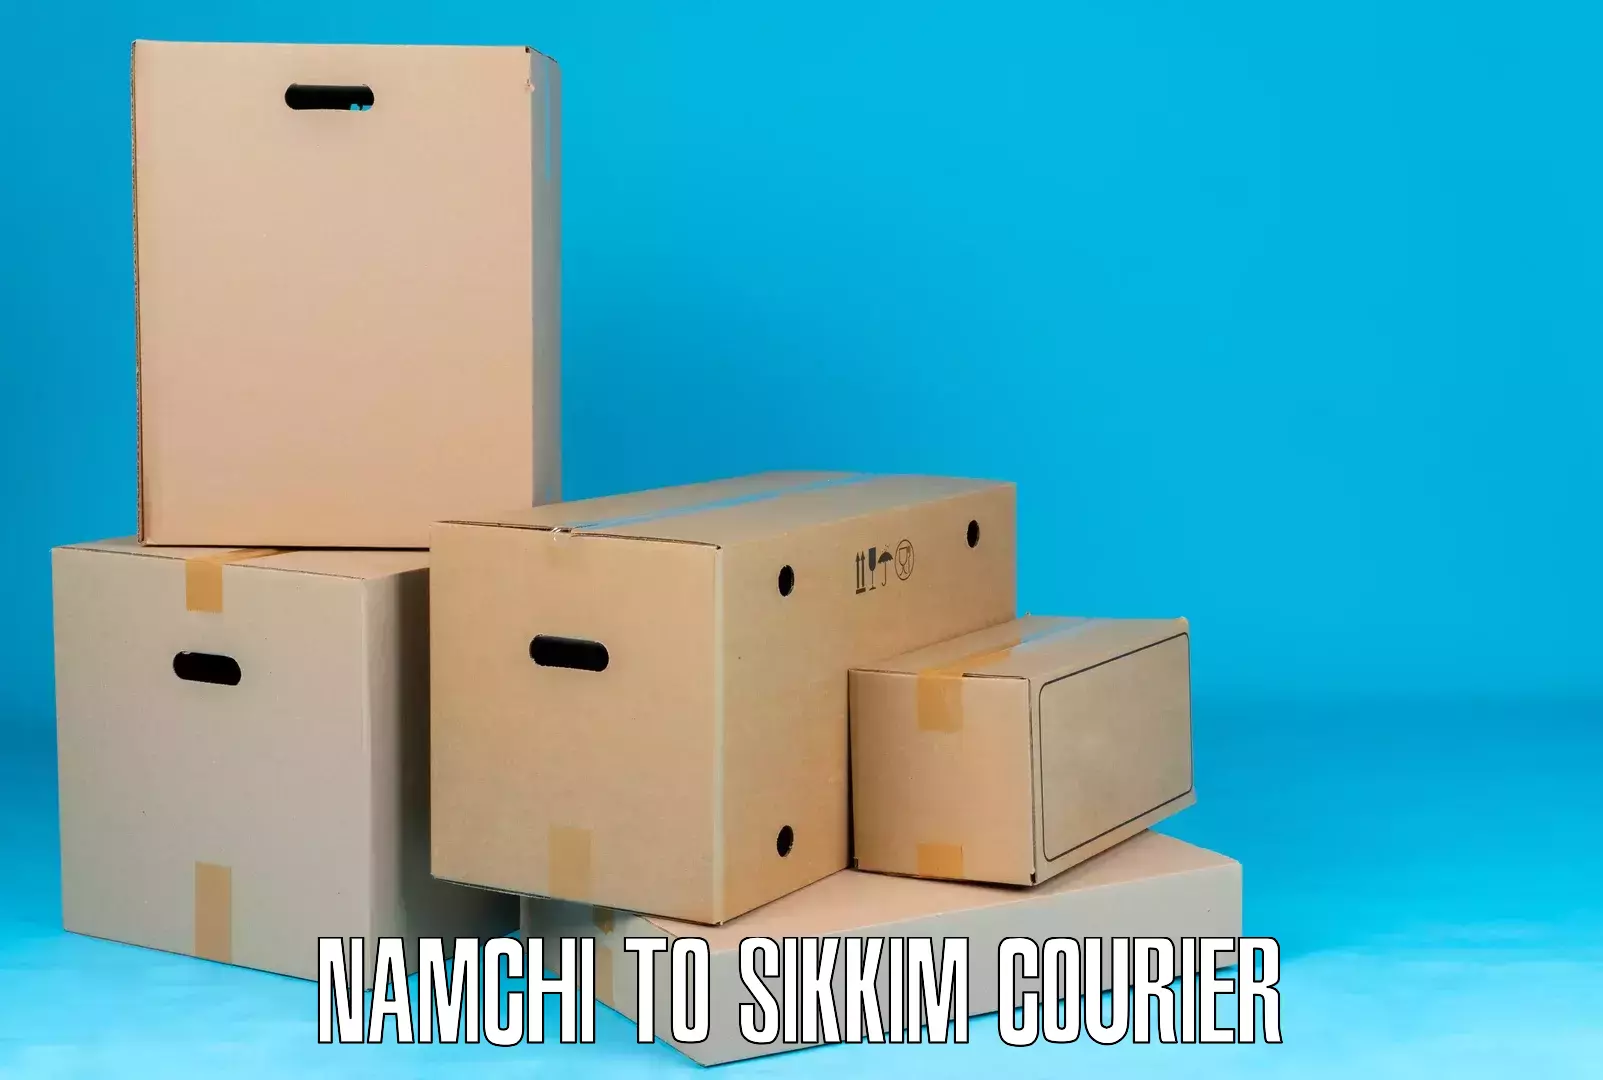 Efficient parcel service Namchi to Namchi